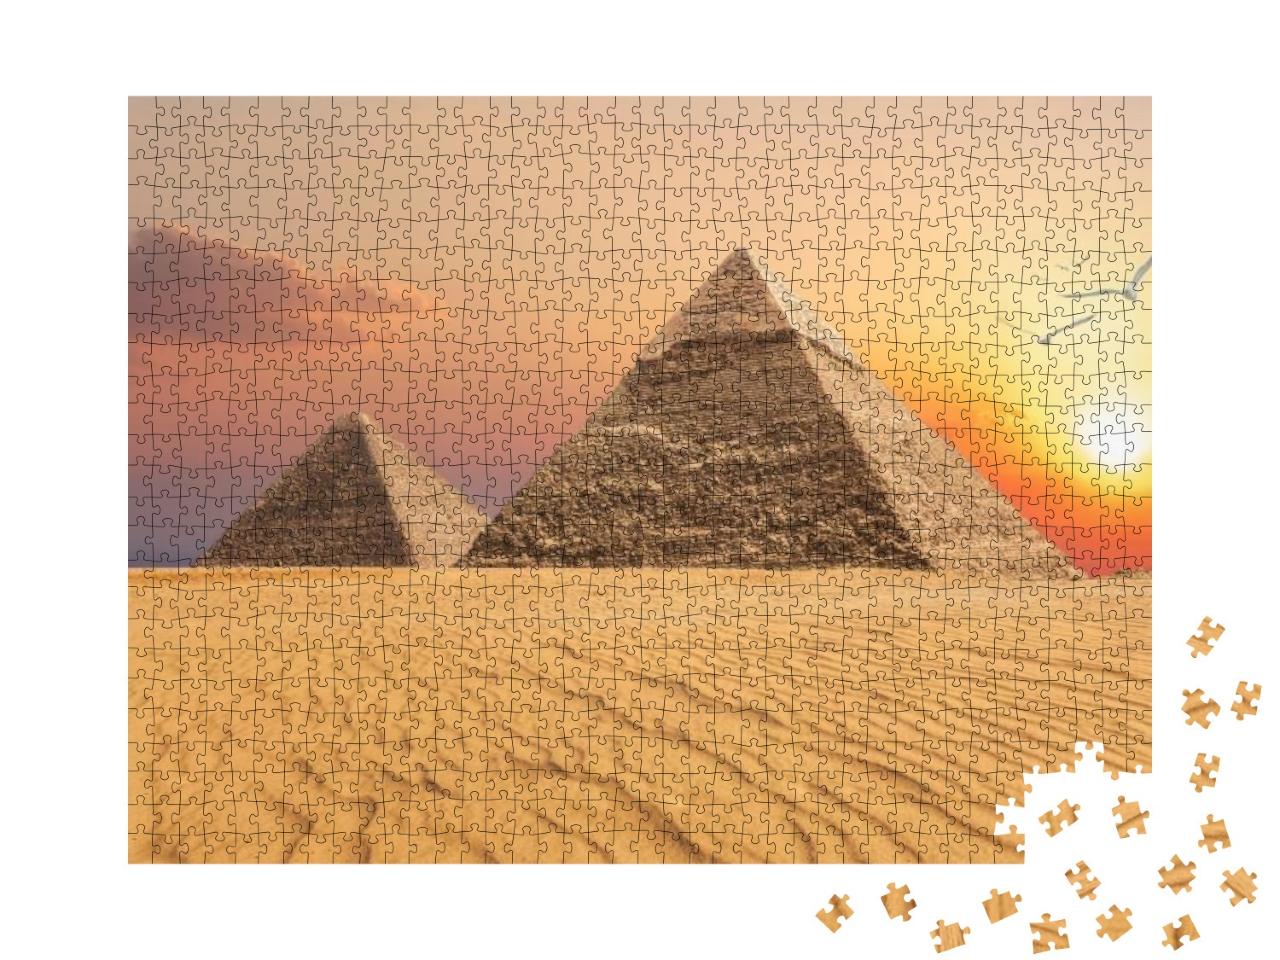 Puzzle 1000 Teile „Chephren-Pyramide und Cheops-Pyramide, Sonnenuntergang, Gizeh“